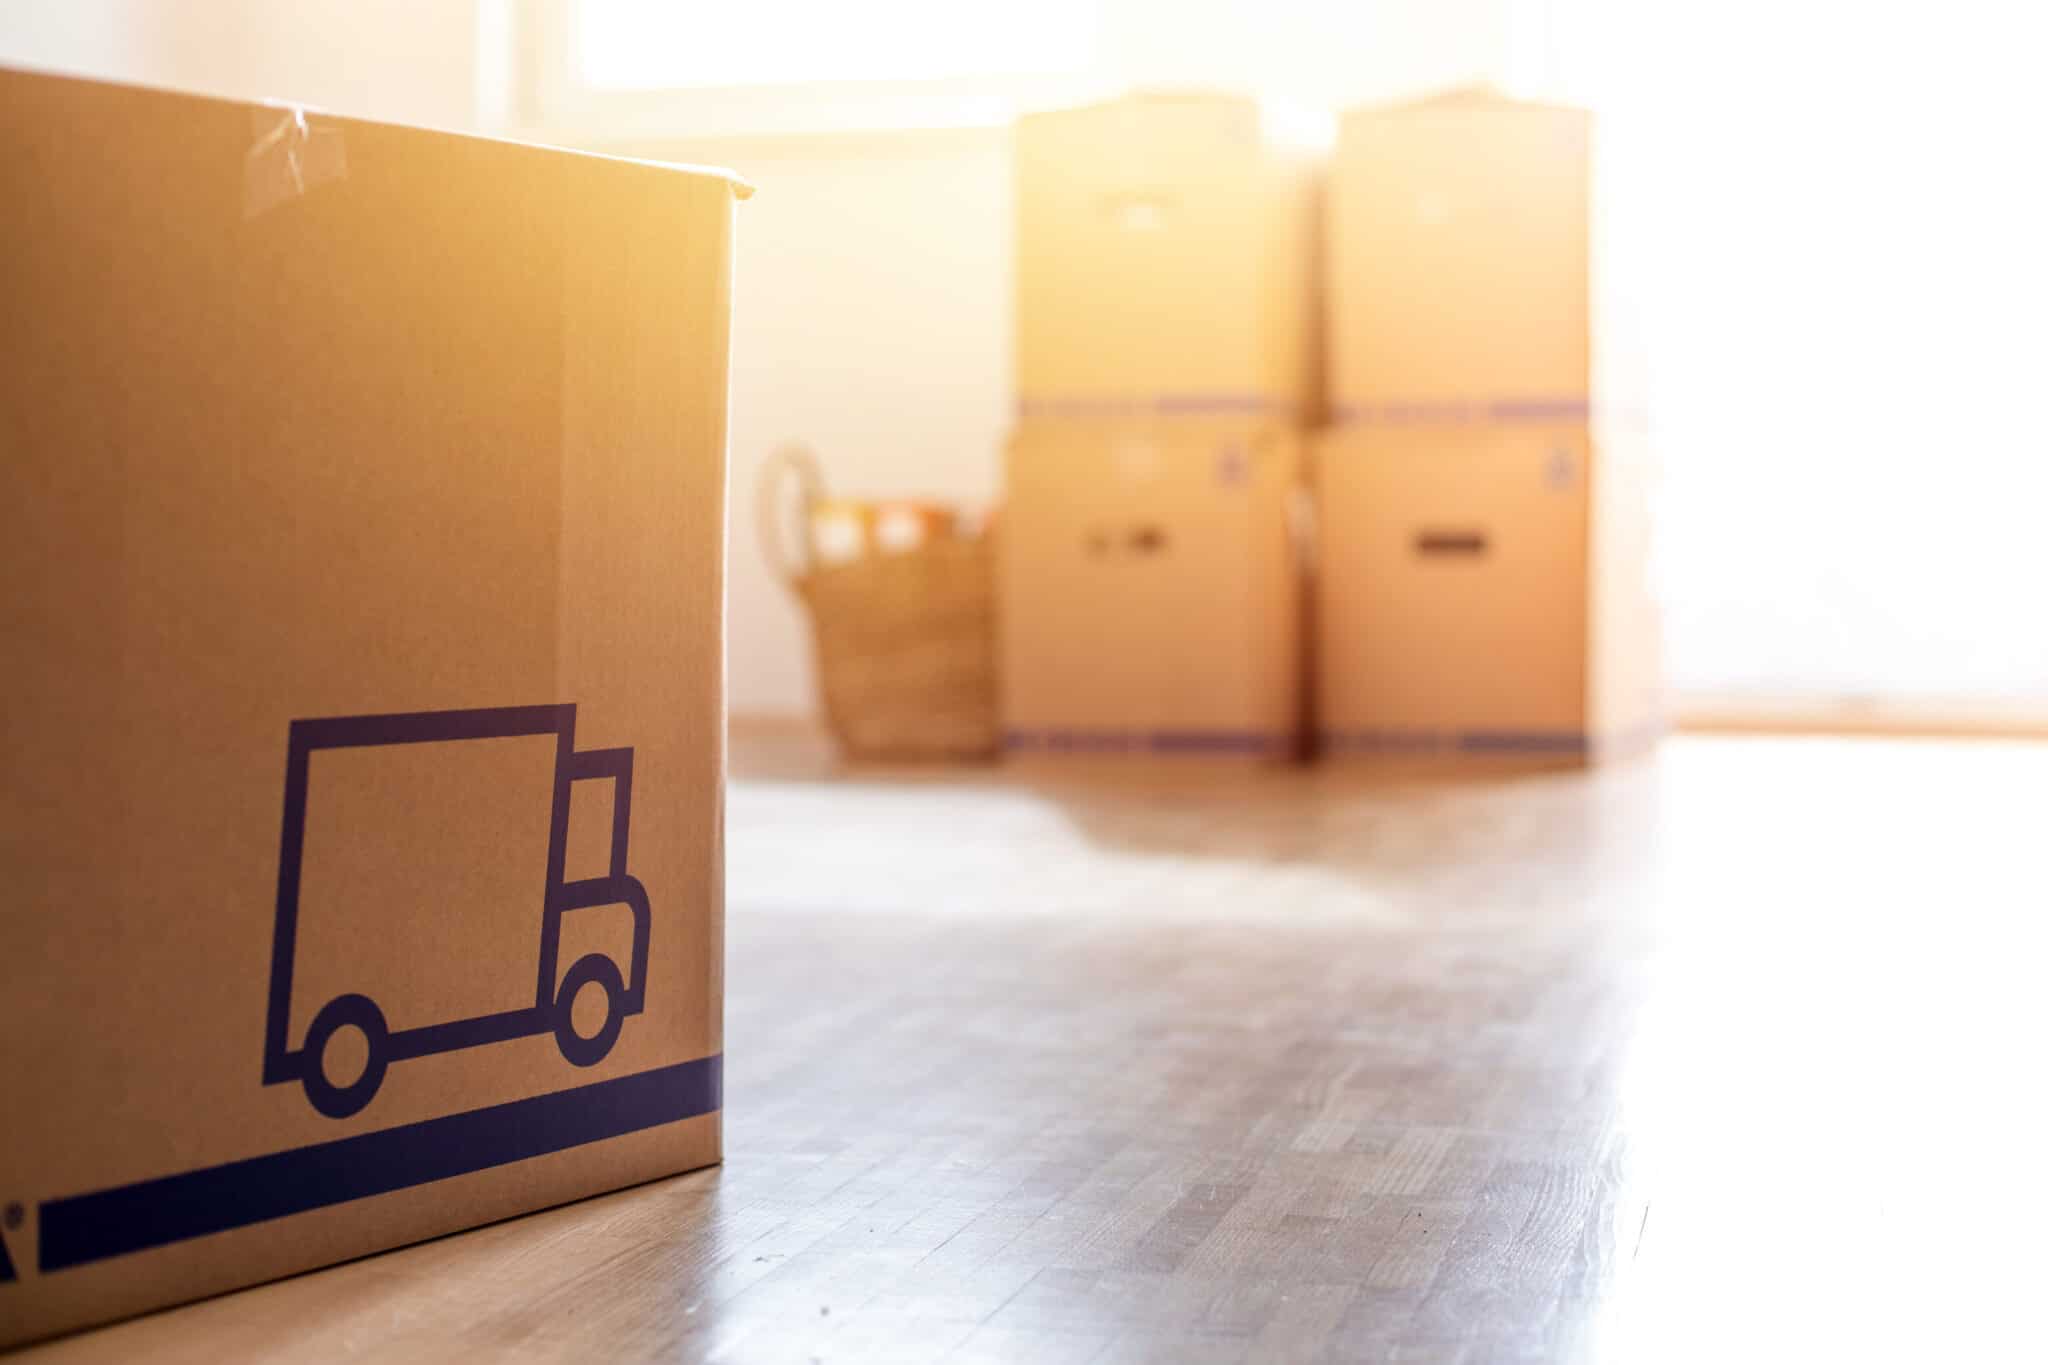 Як зберегти порядок у речах під час переїзду: секрети упаковки від УРА Переїзд